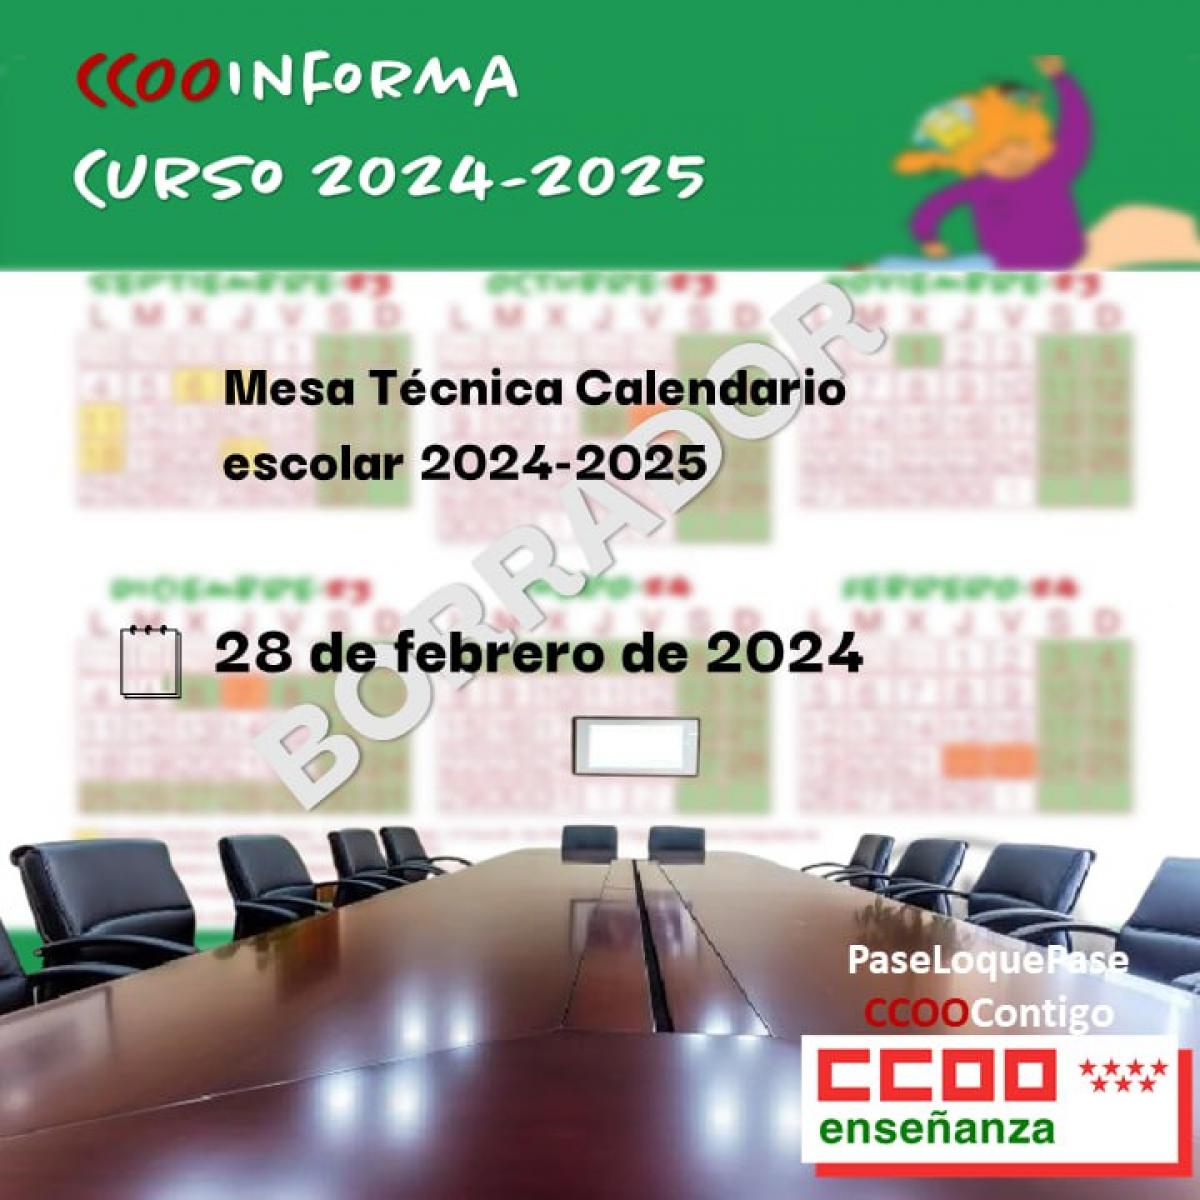 CCOO rechaza la propuesta de calendario curso 2024/2025